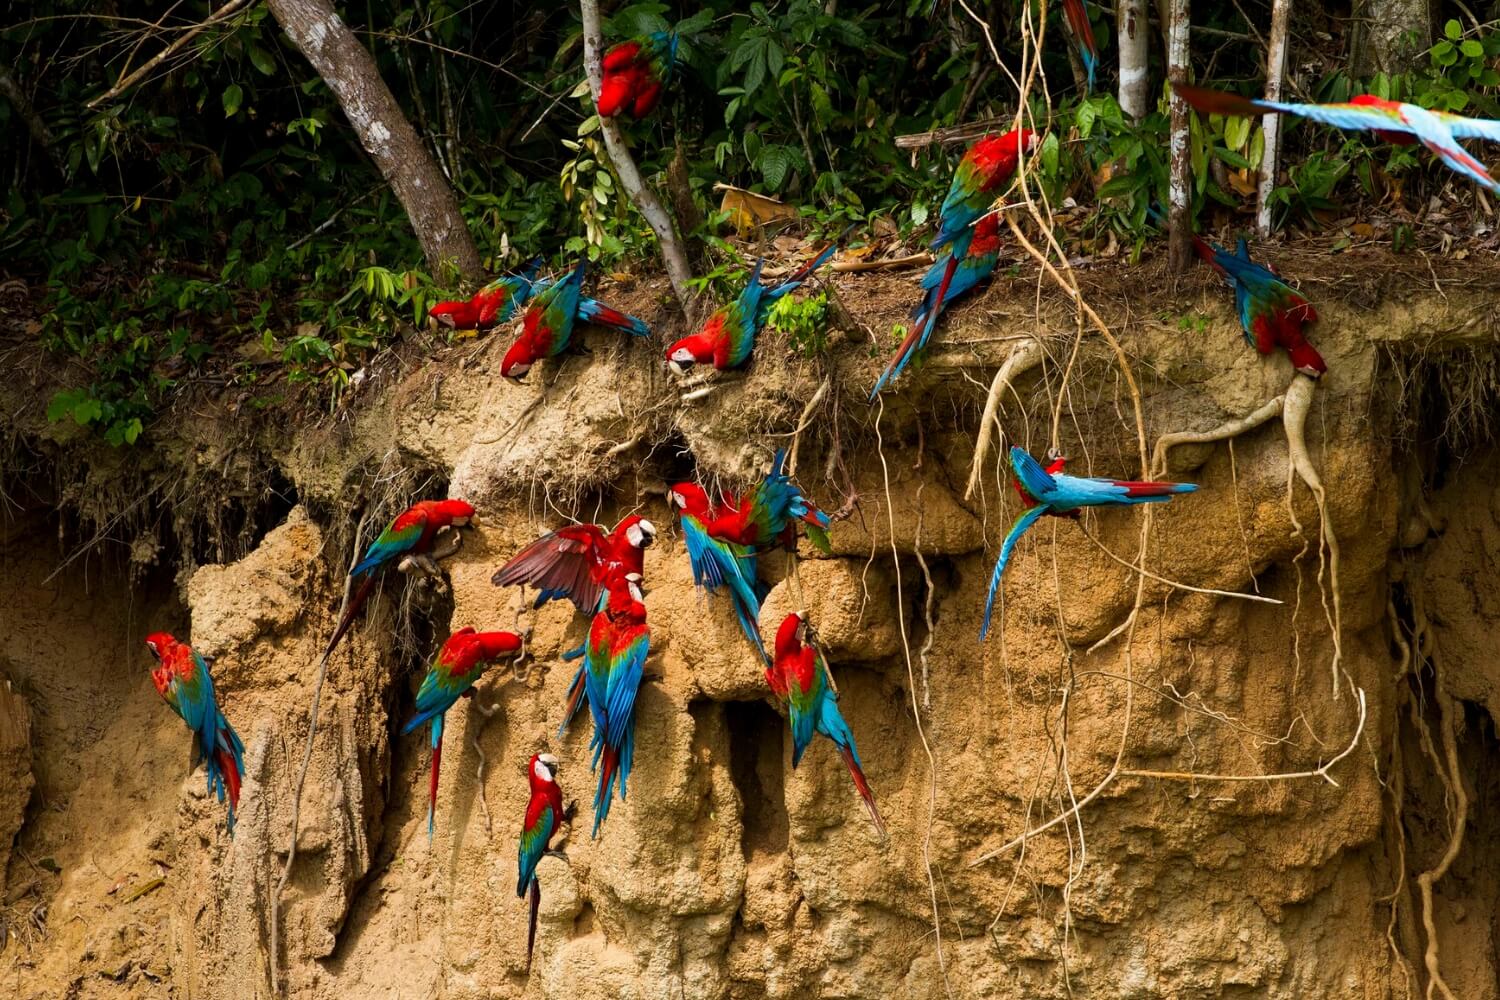 Naturschutzgebiet Tambopata: Einer der am meisten empfohlenen Touristenorte im peruanischen Dschungel